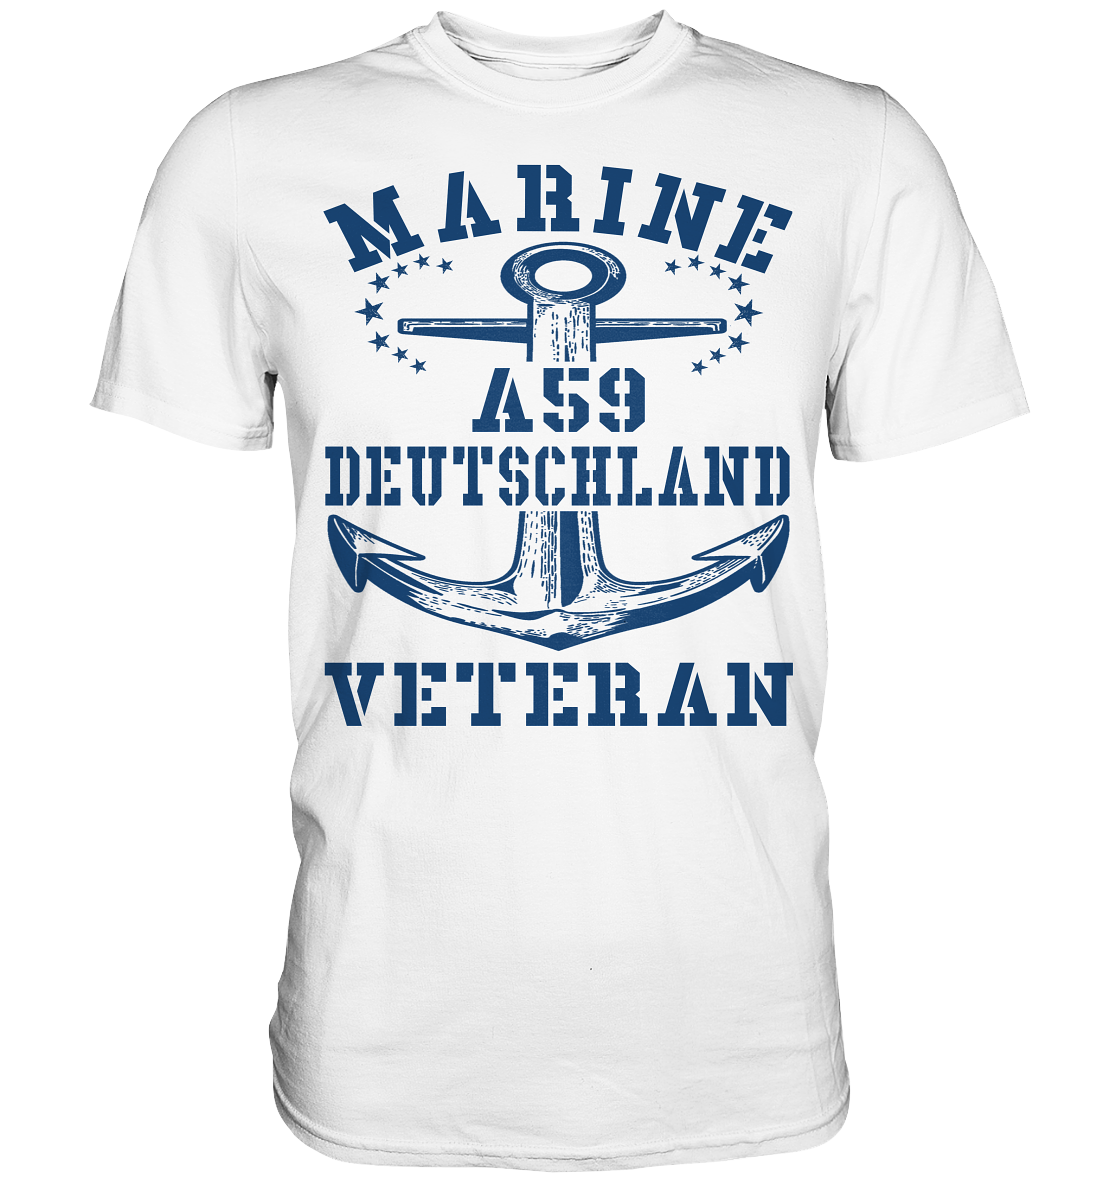 MARINE VETERAN A59 DEUTSCHLAND - Premium Shirt